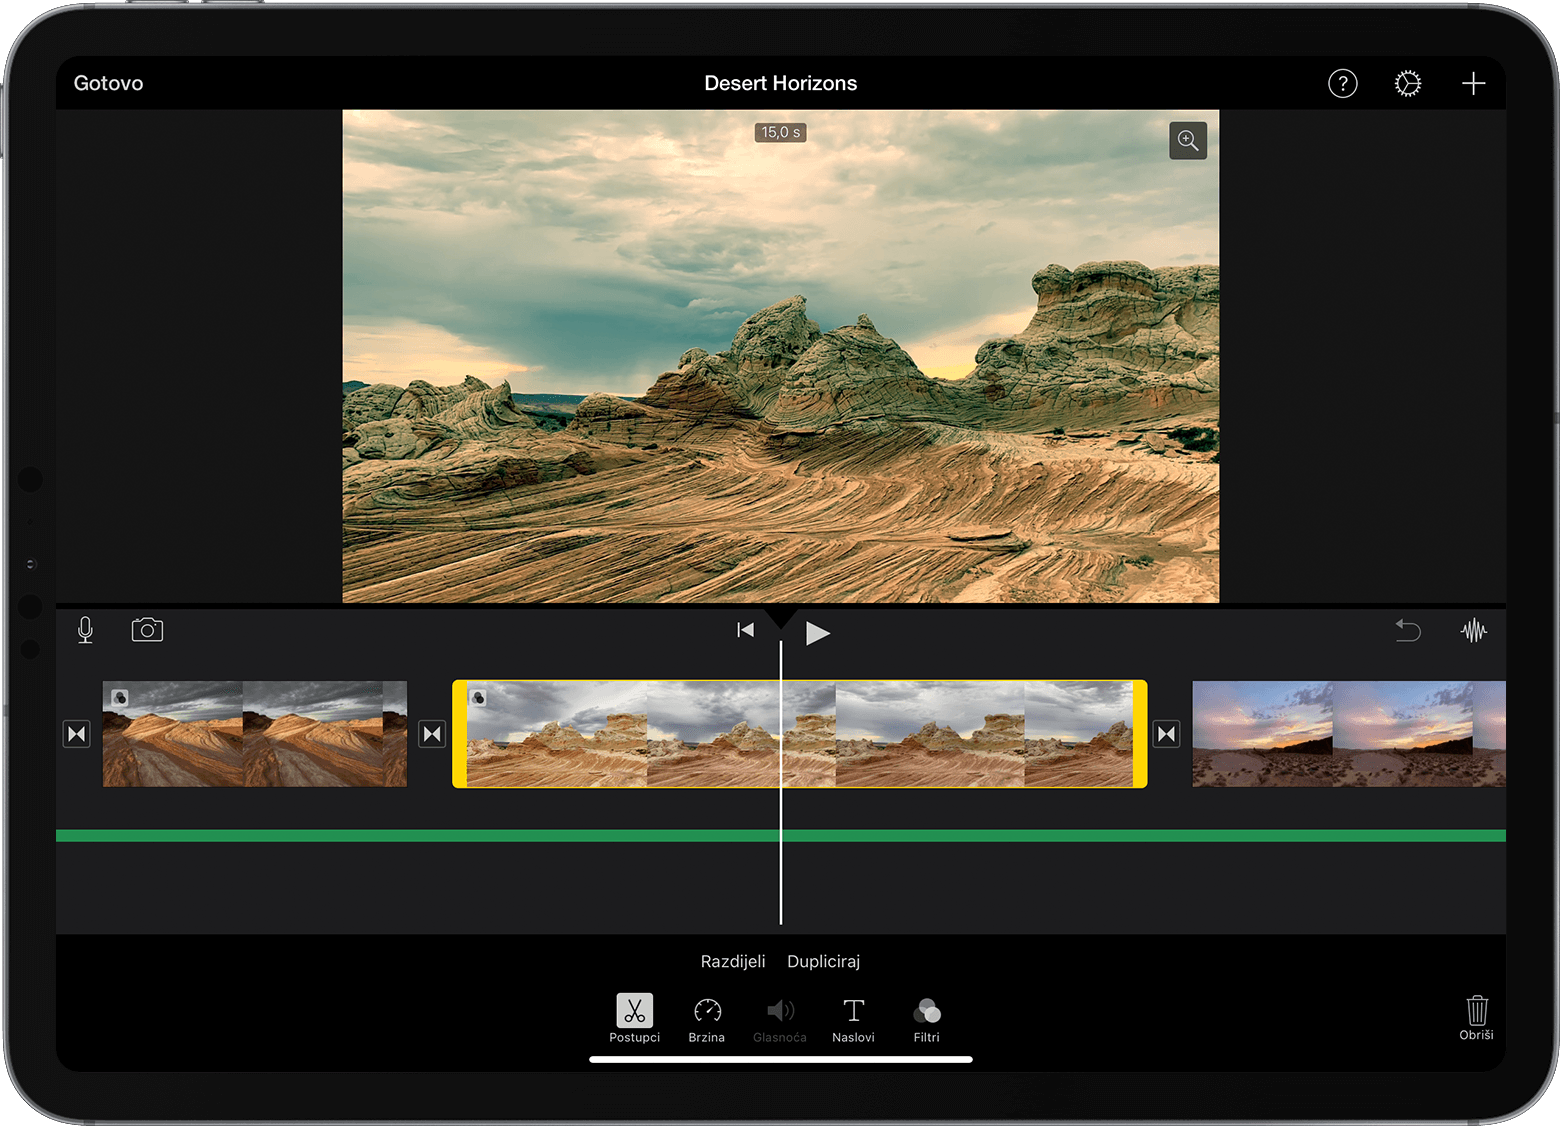 Projekt u aplikaciji iMovie na iPad uređaju otvoren s videoisječkom odabranim na vremenskoj liniji